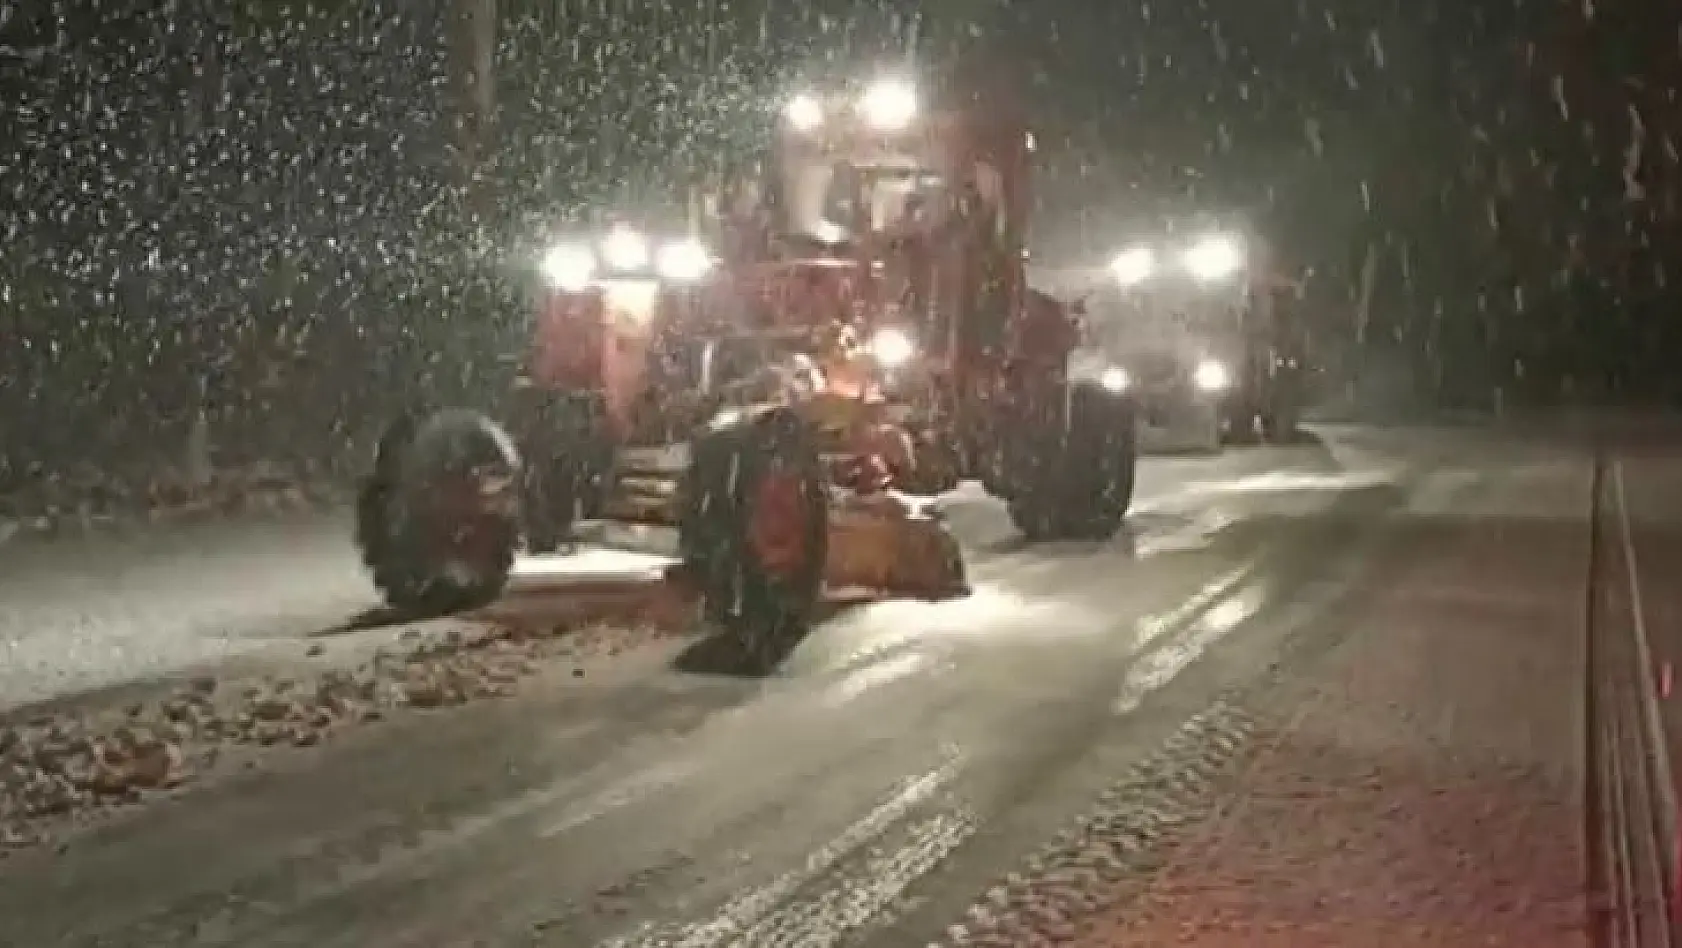 Bingöl'de karayolları ekipleri gece gündüz demeden karla mücadelesi sürüyor